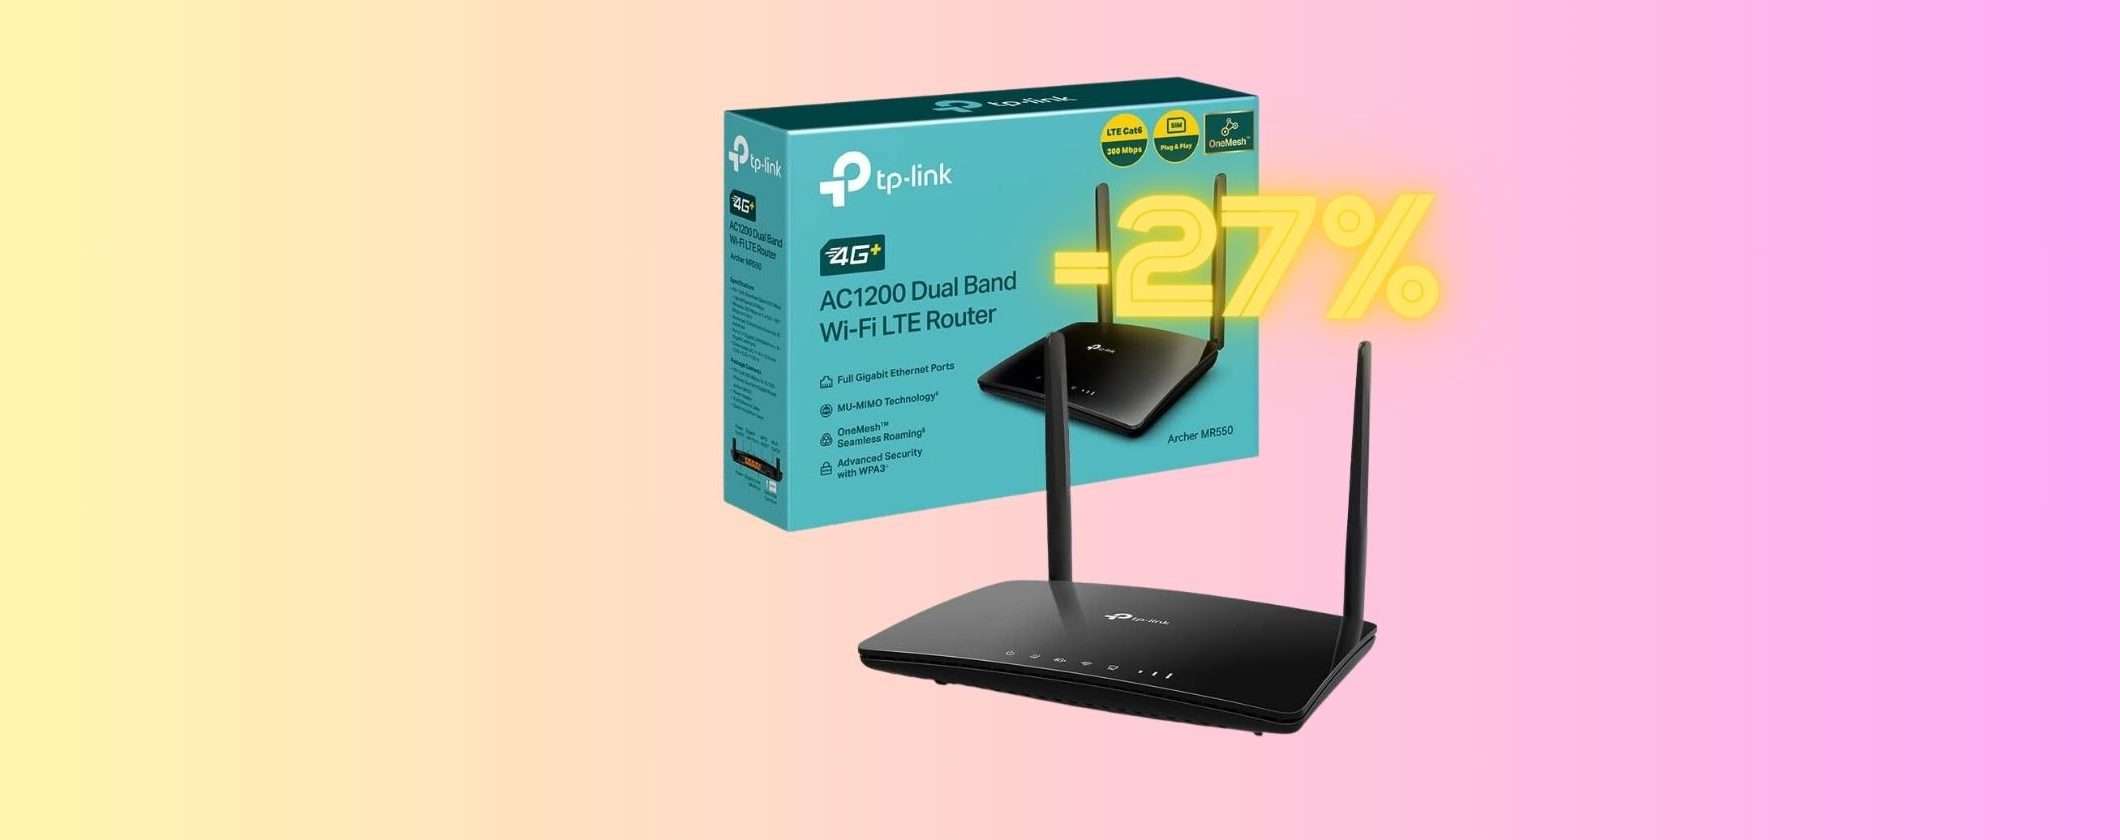 Router 4G+ TP-Link al 27% di SCONTO di Amazon